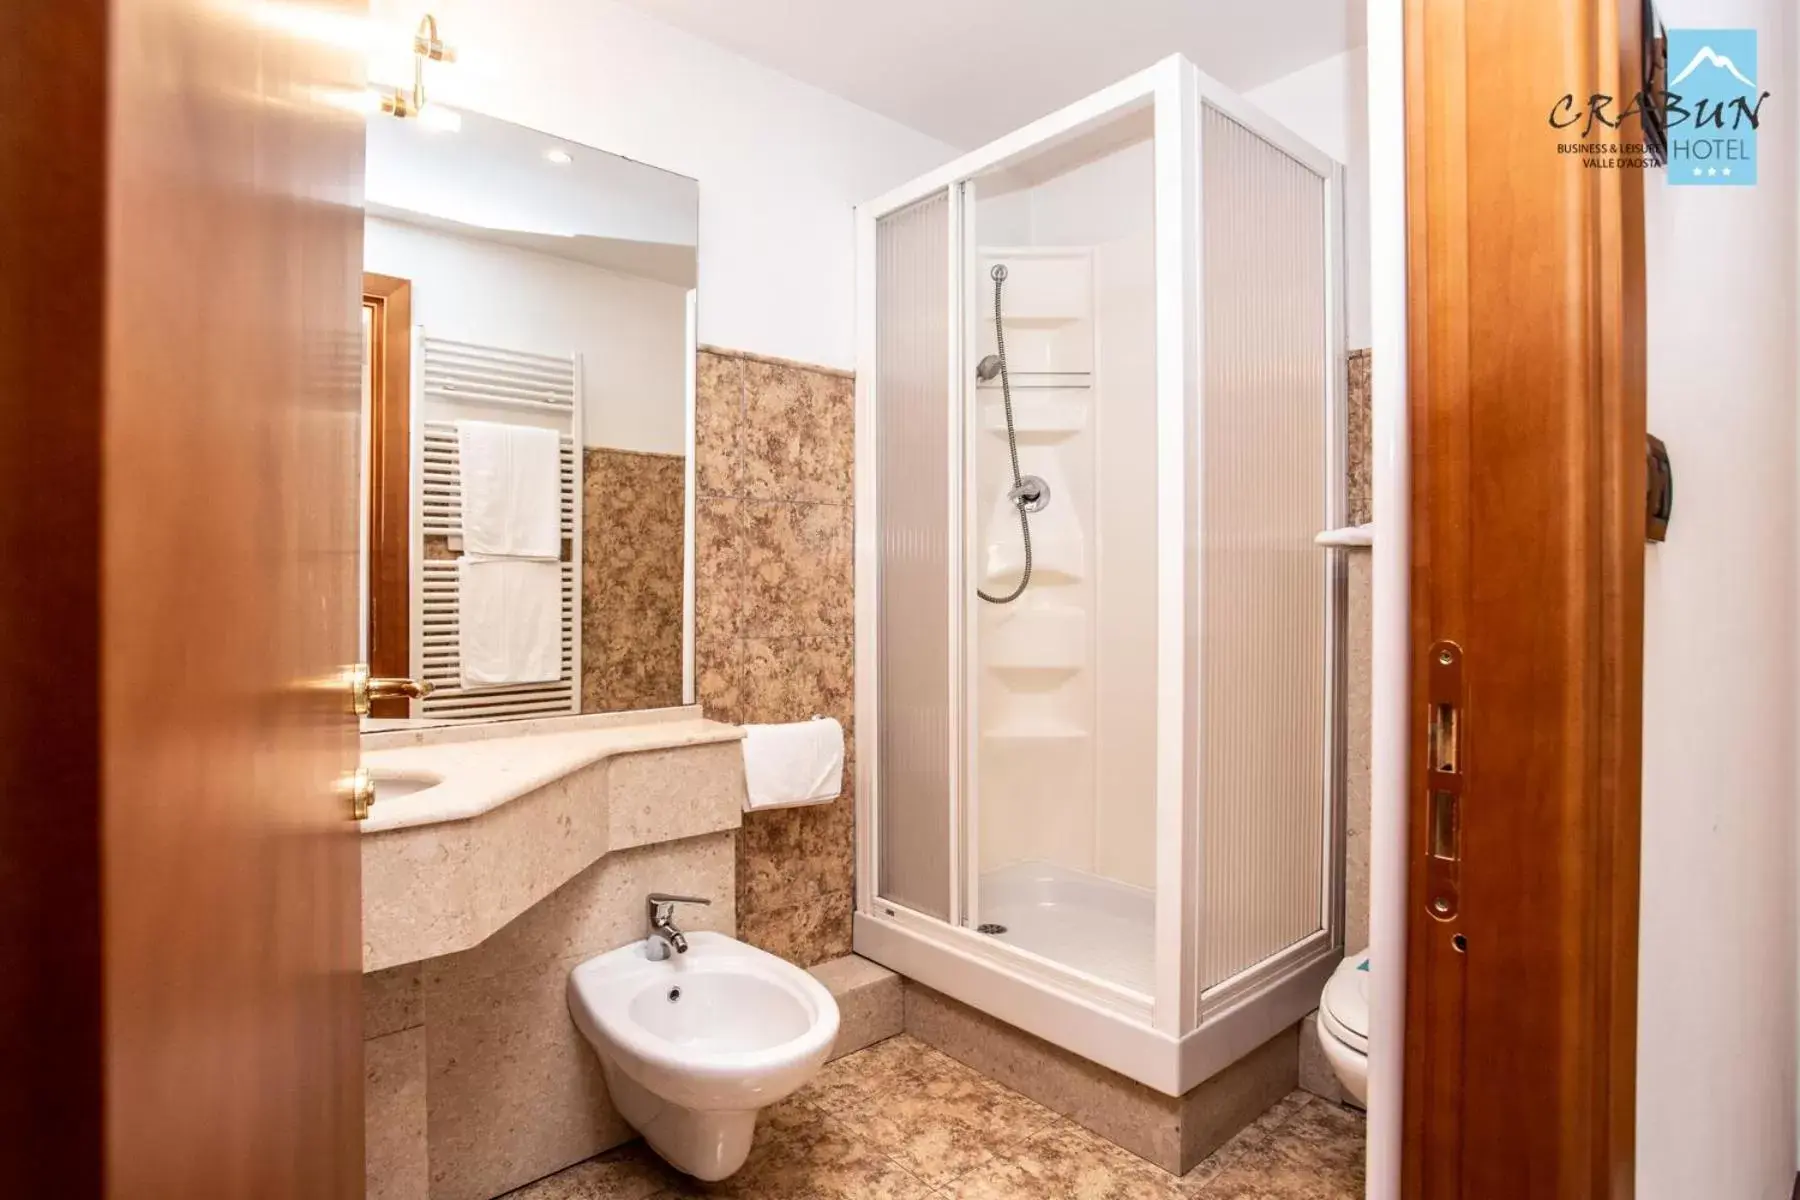 Bathroom in Crabun Hotel